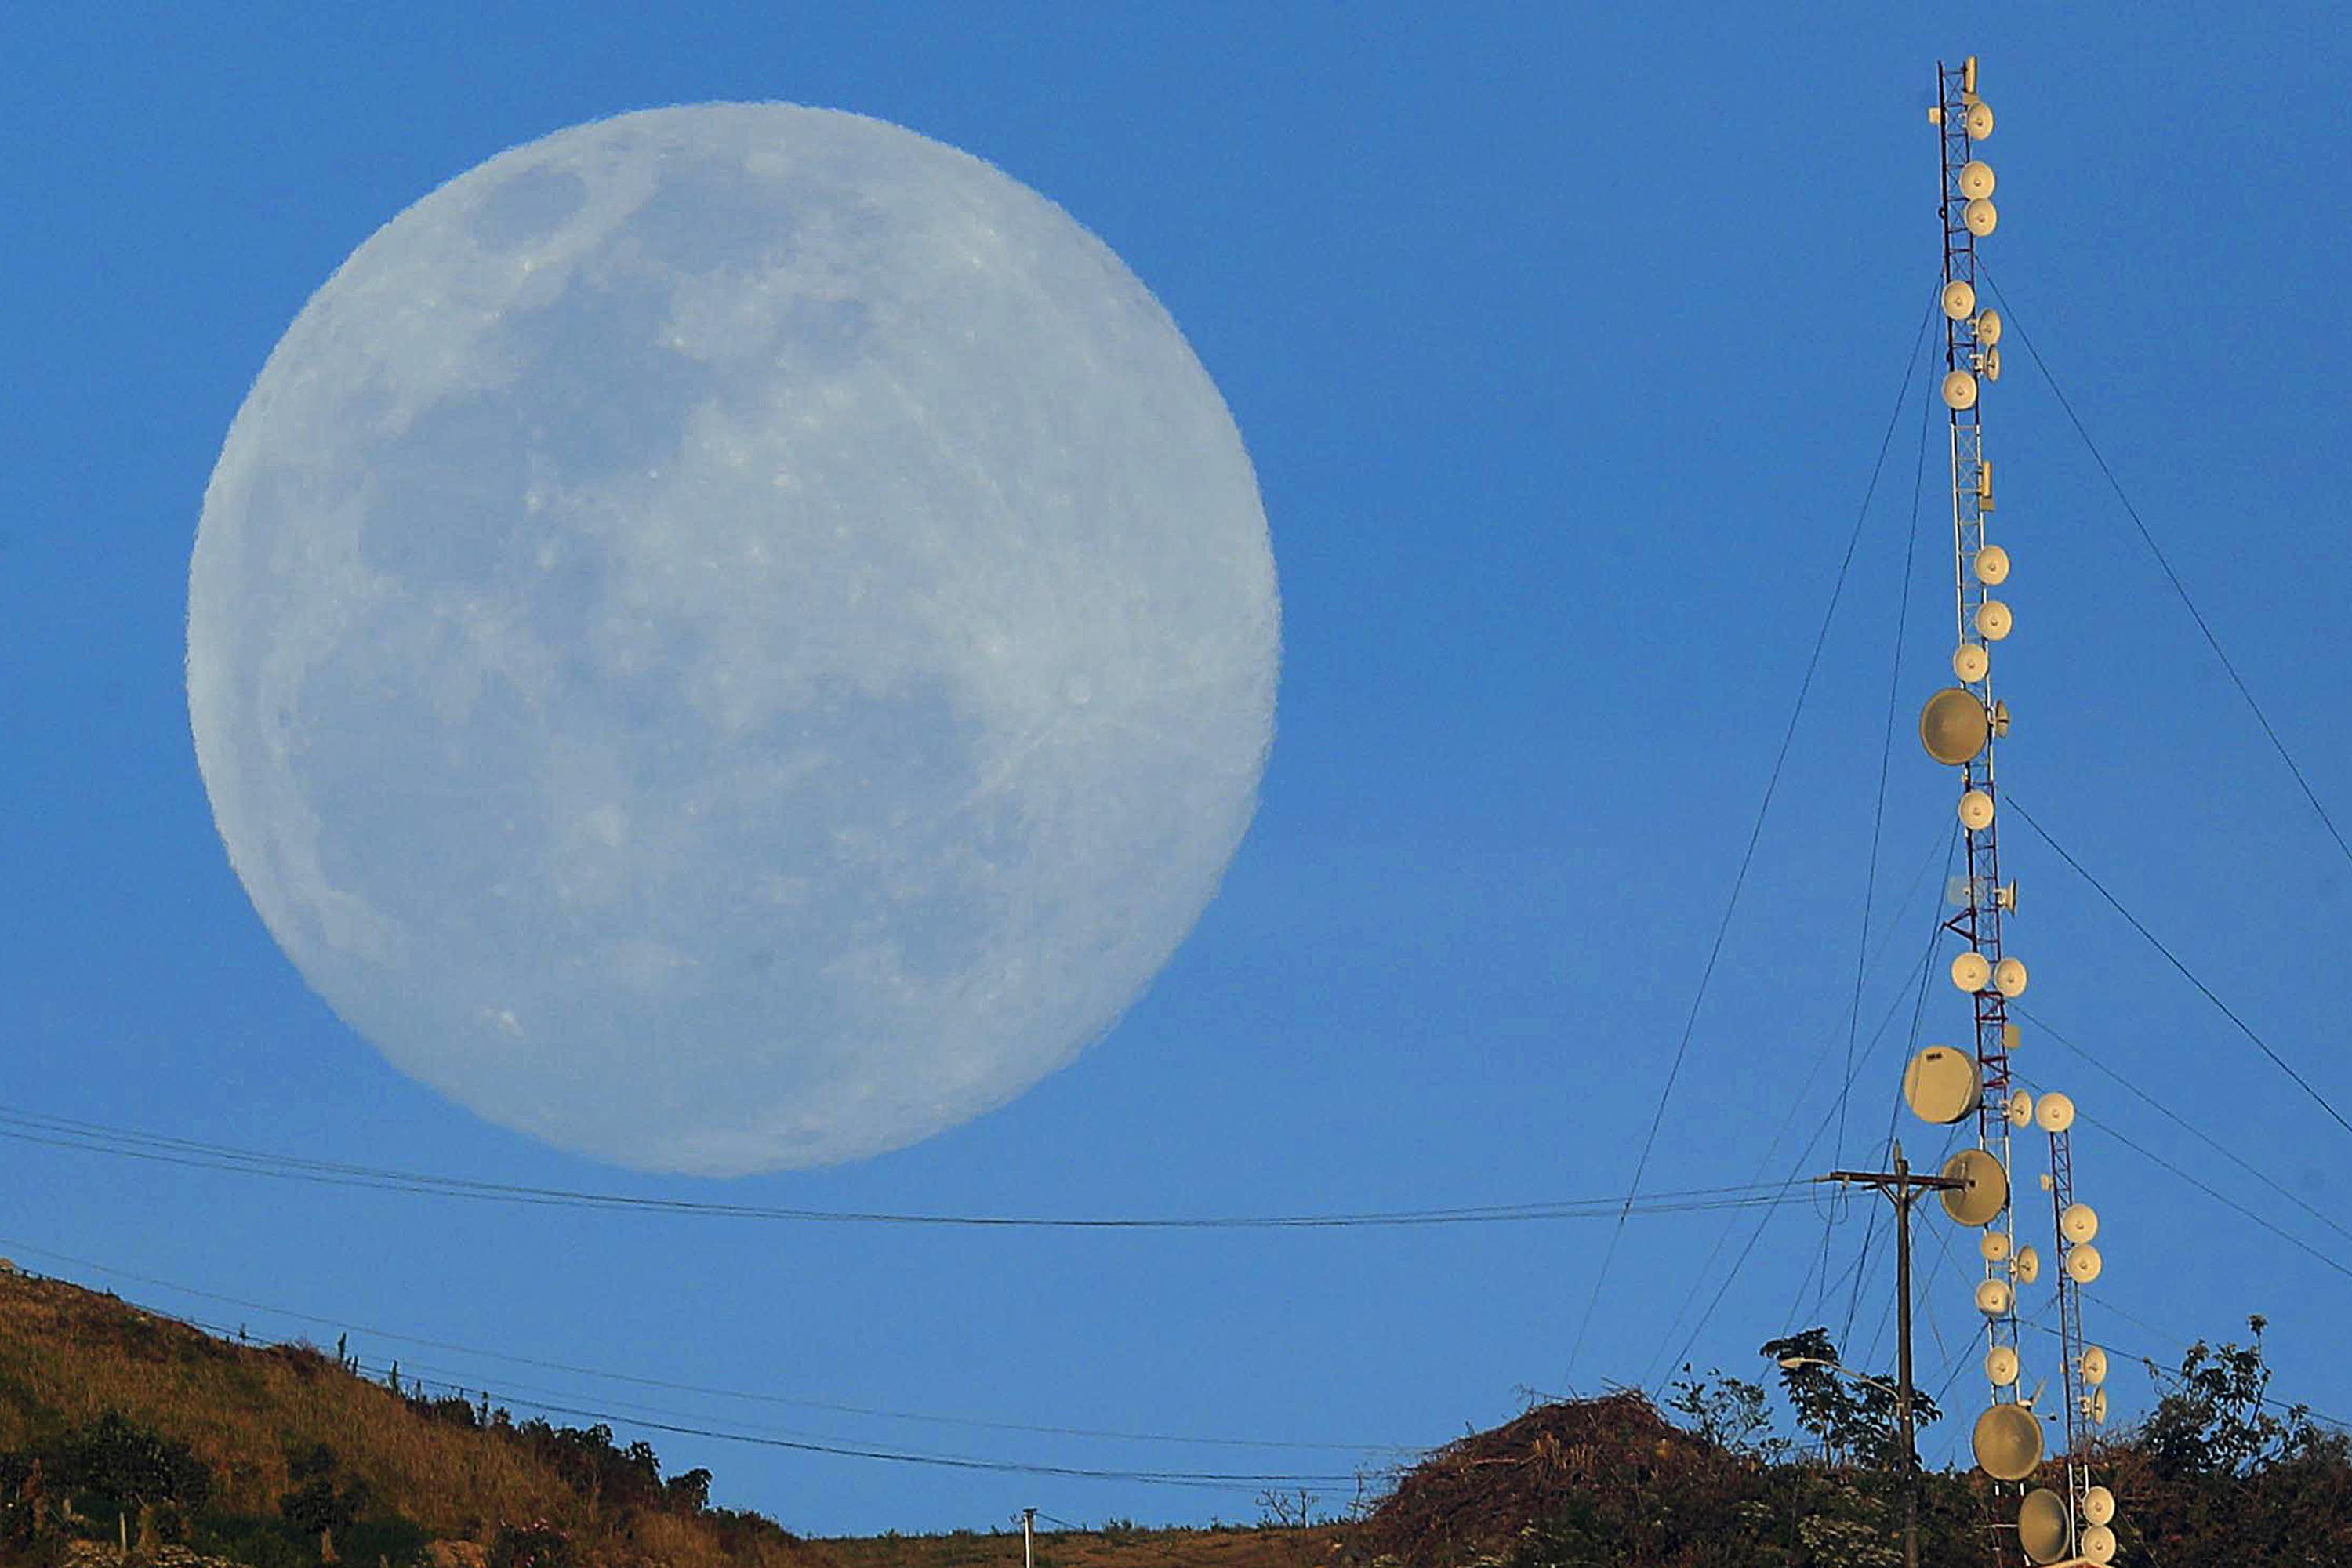 Primera luna llena del 2022 el 16 de enero de ese año sobre Llano Grande de Cartago. Los mejores momentos para apreciar esa fase lunar es justo al asomarse u ocultarse en el horizonte cuando luce más grande. Fotografía: